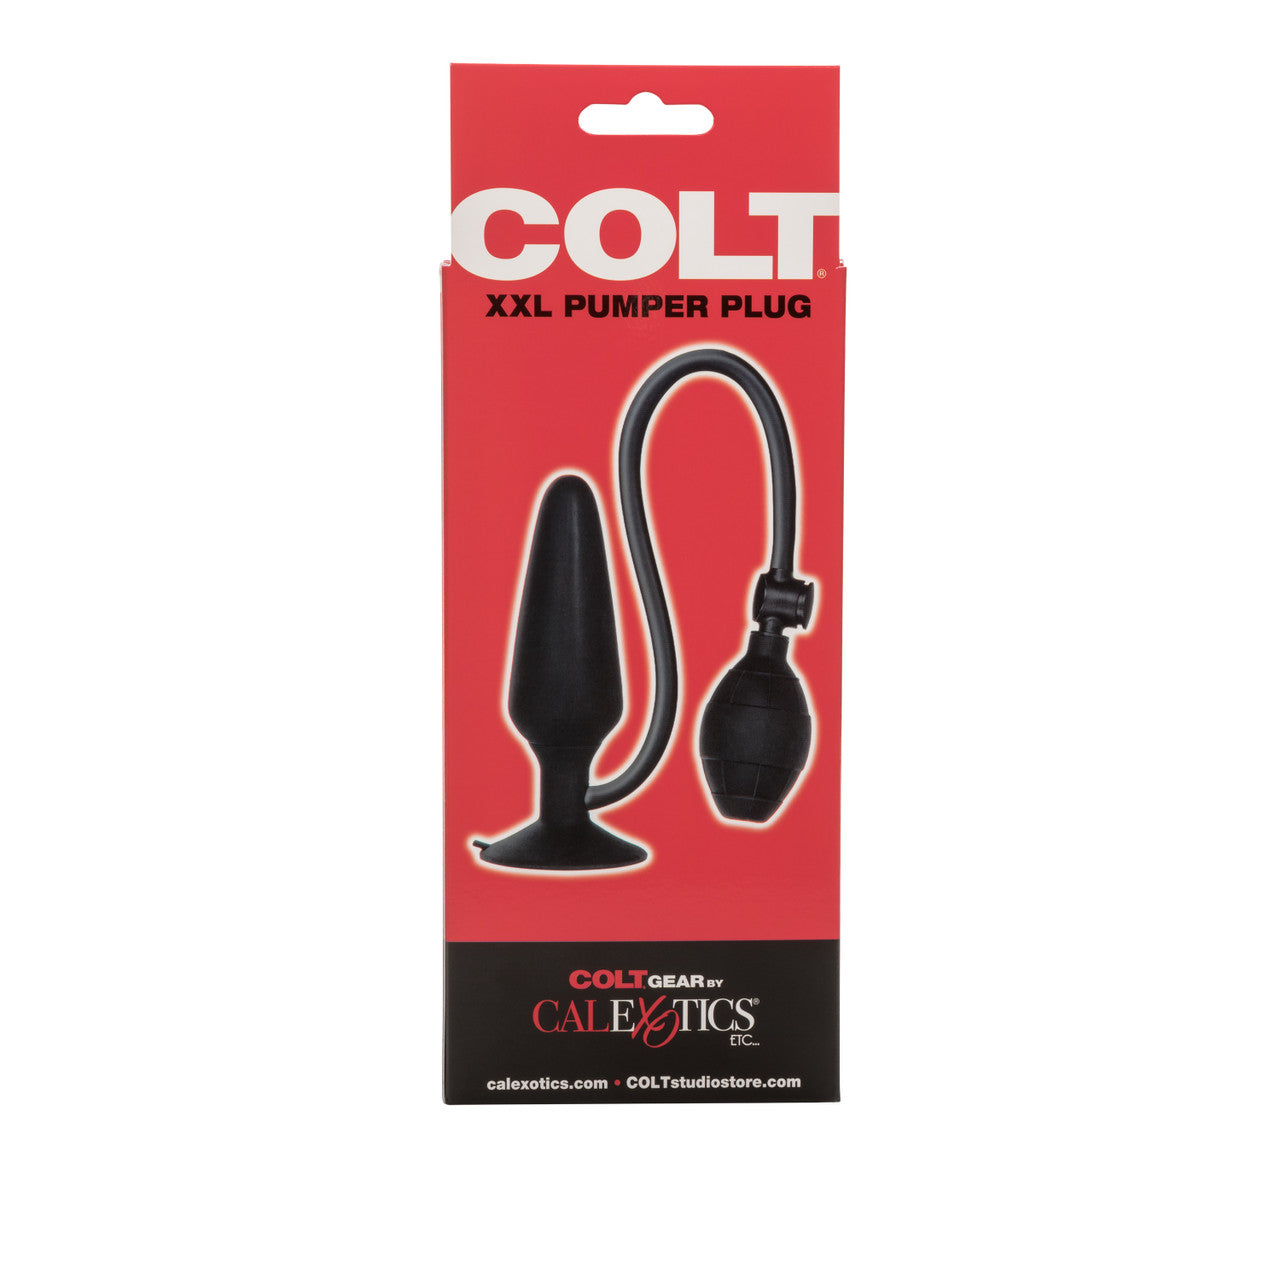 Colt XXL Pumper Plug - Black - Thorn & Feather Sex Toy Canada